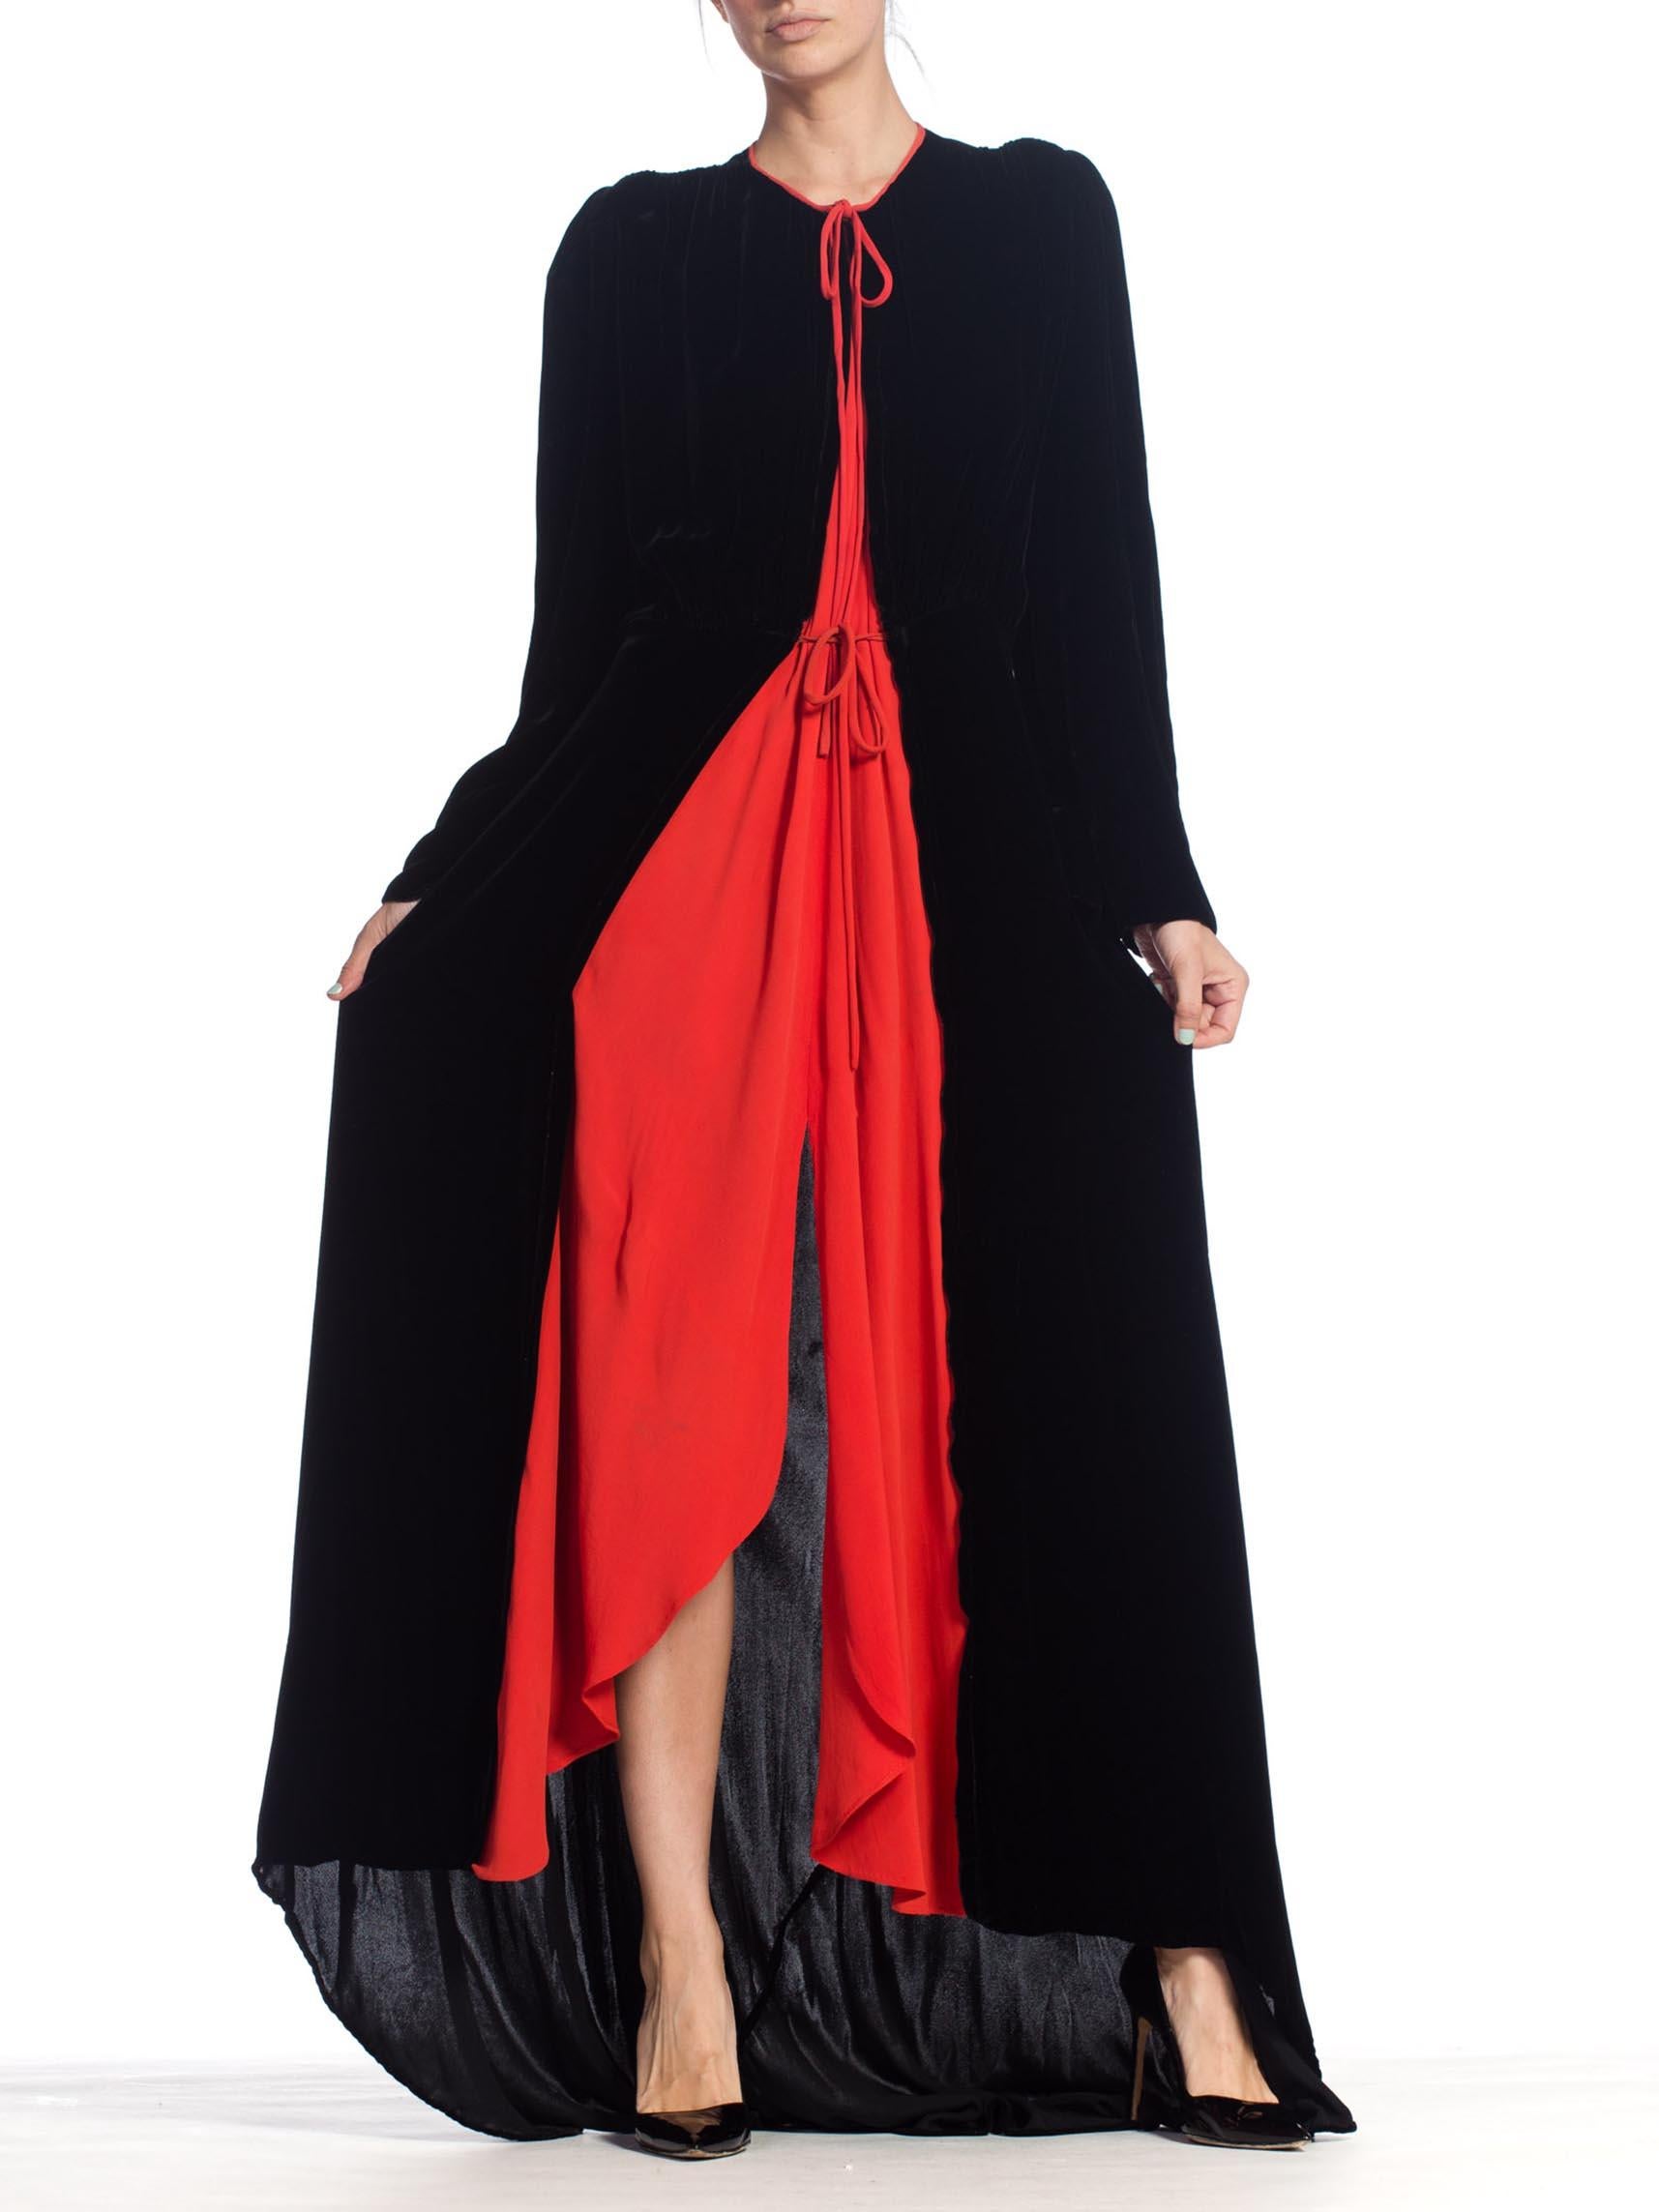 Kleding Gender-neutrale kleding volwassenen Pyjamas & Badjassen Jurken Gorgeous 60s Does 40s Burgundy Crushed Velvet Long Robe/Dress/Coat 